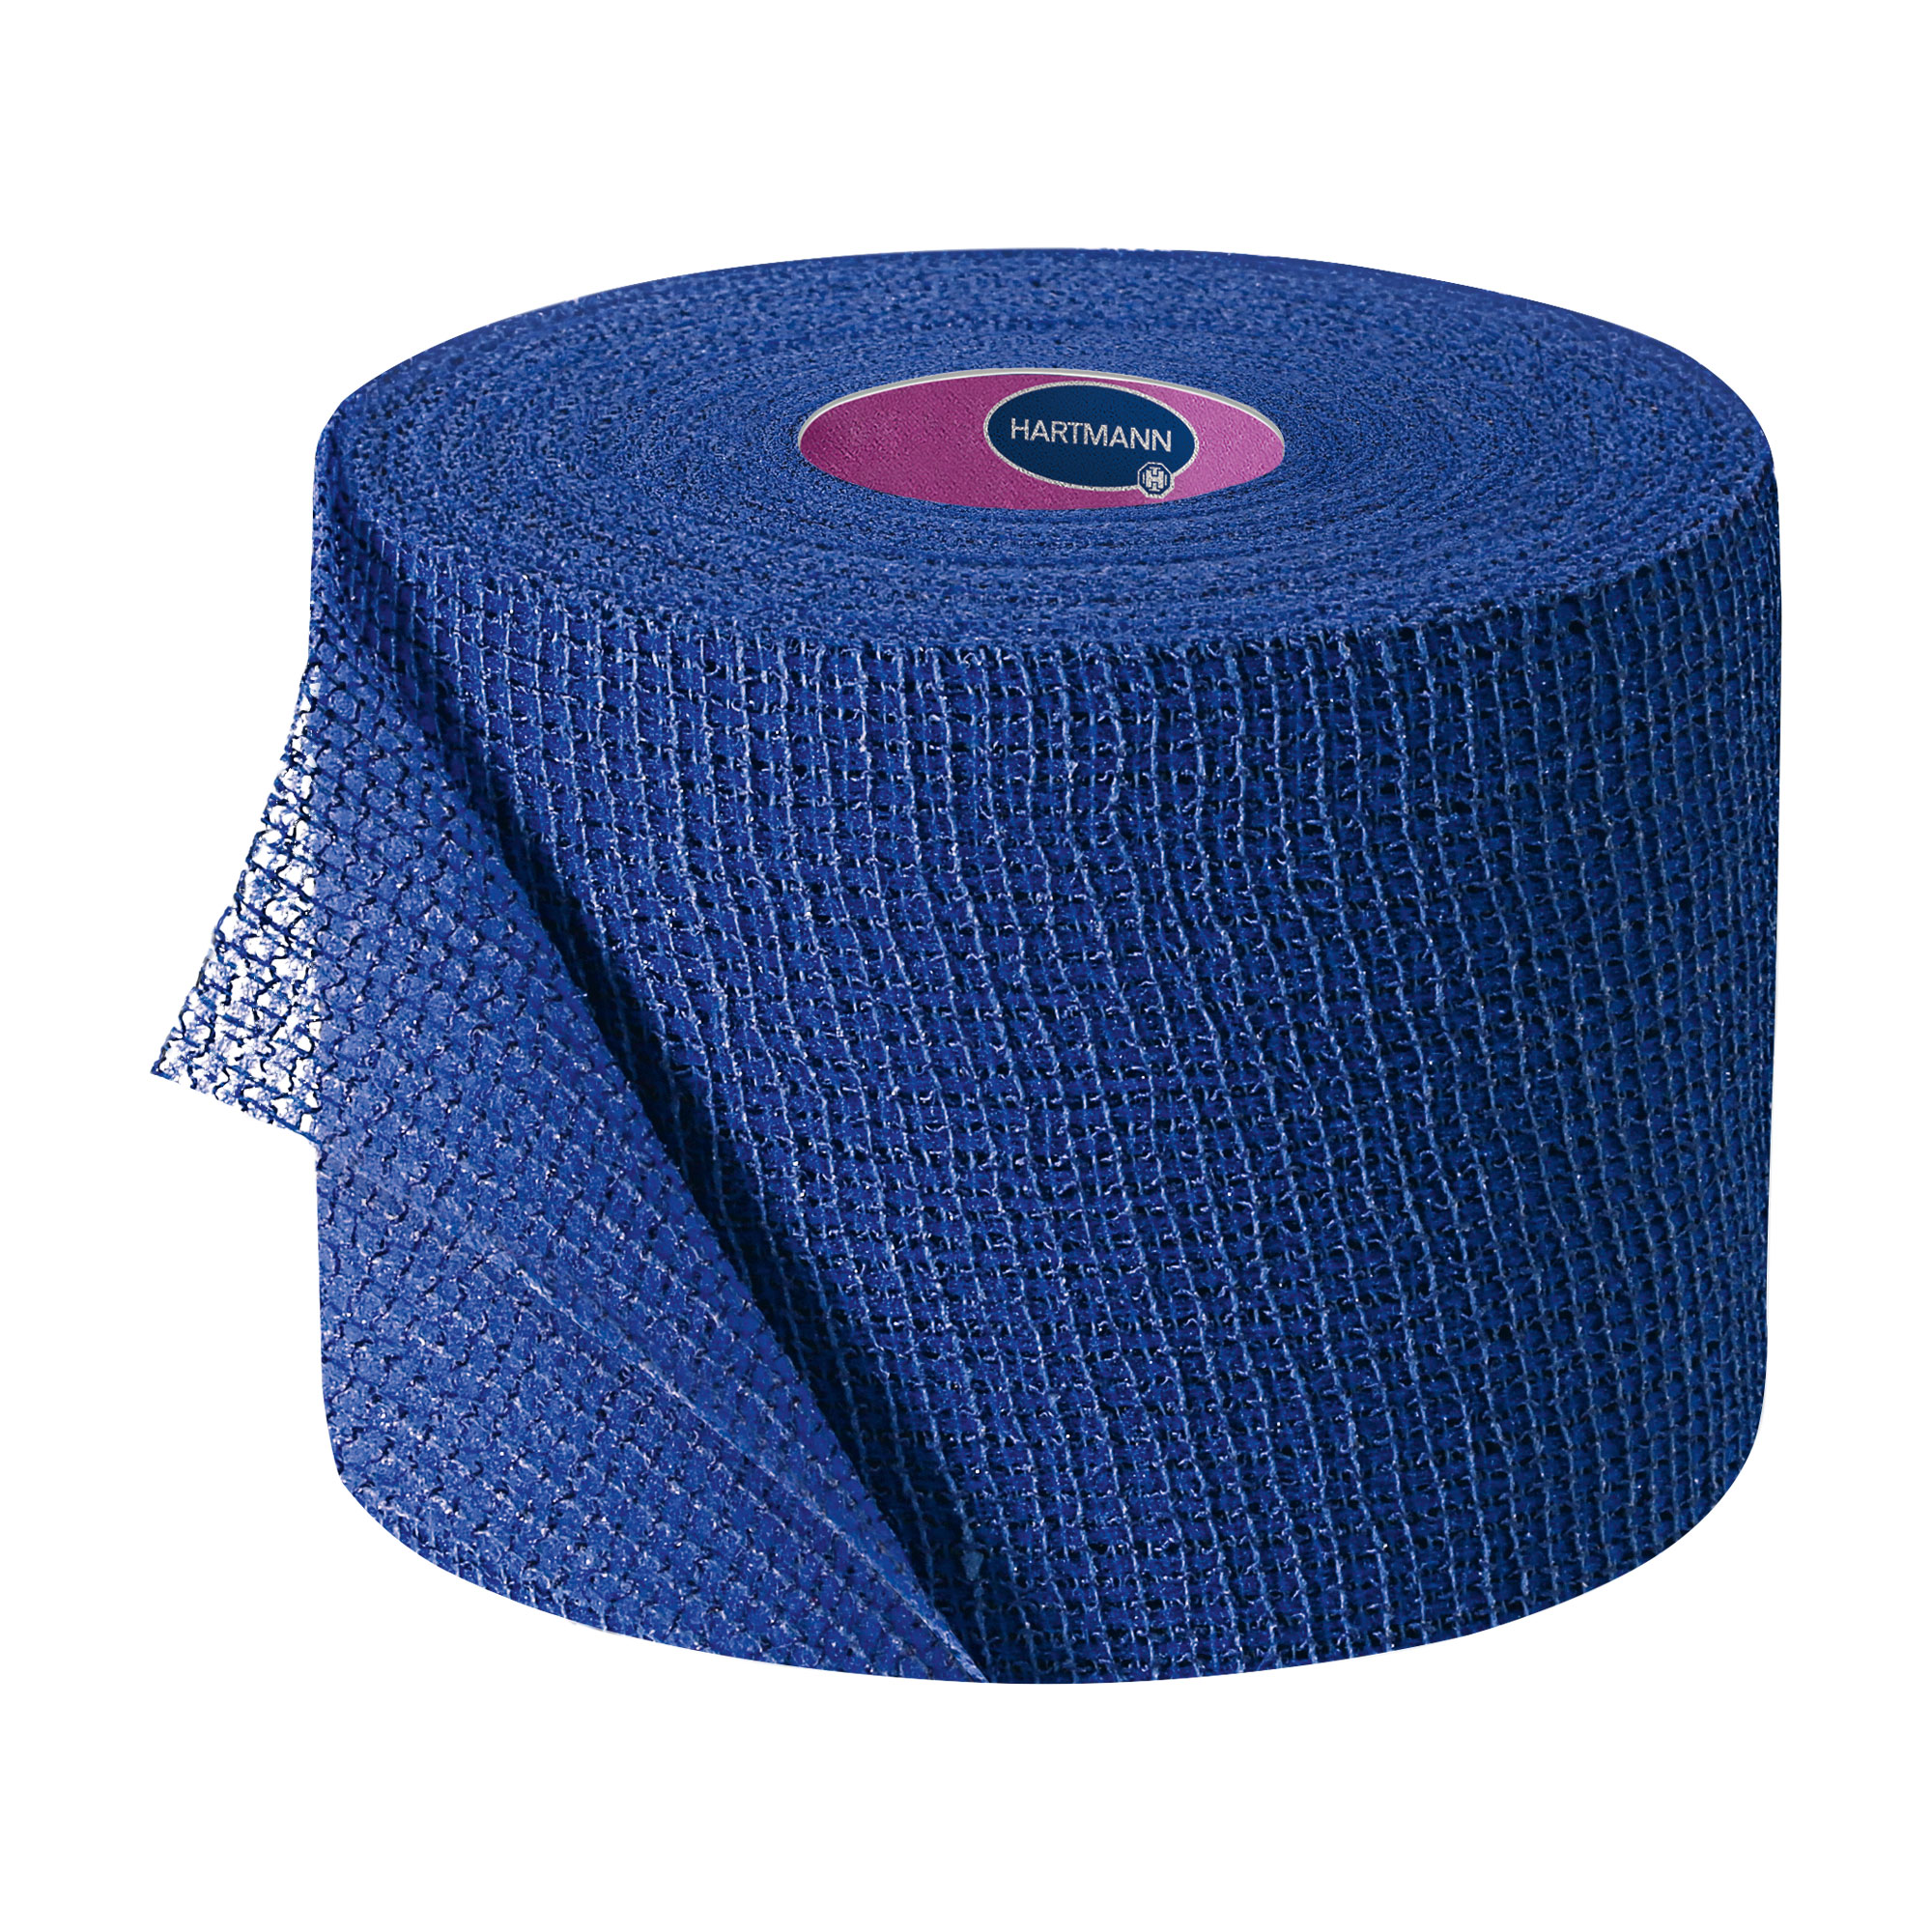 Einzeln verpackte kohäsive, elastische Fixierbinden. Mit dem zweifachen Hafteffekt. Farbe: blau.